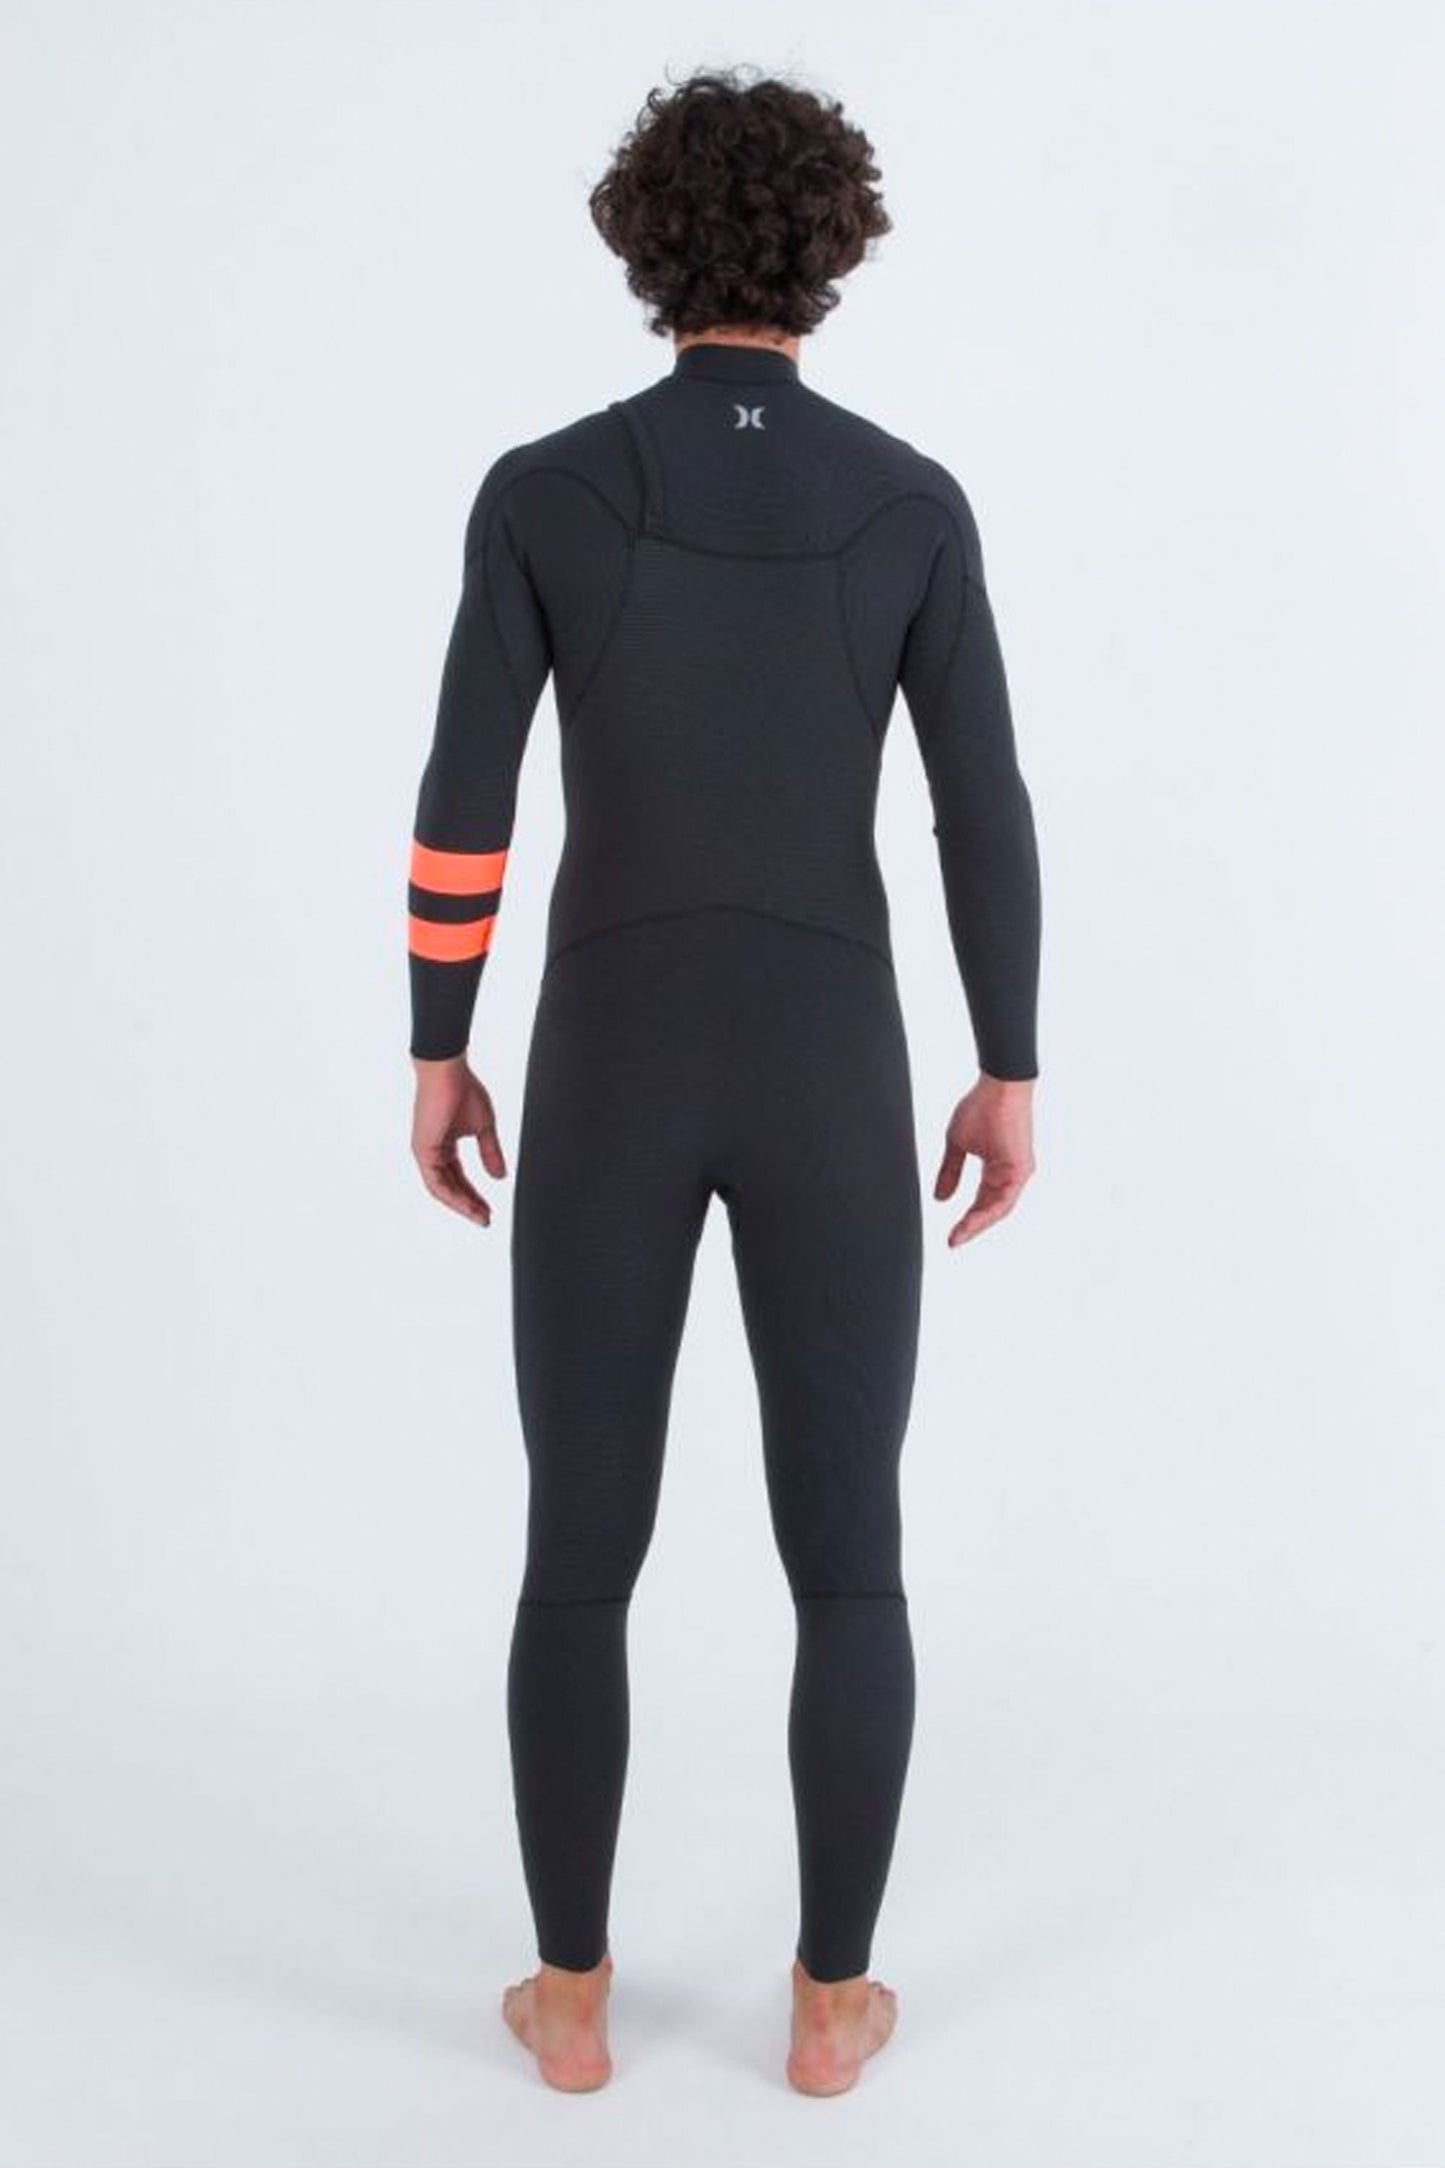 Pukas-Surf-Shop-hurley-wetsuit-black-graphite-a34